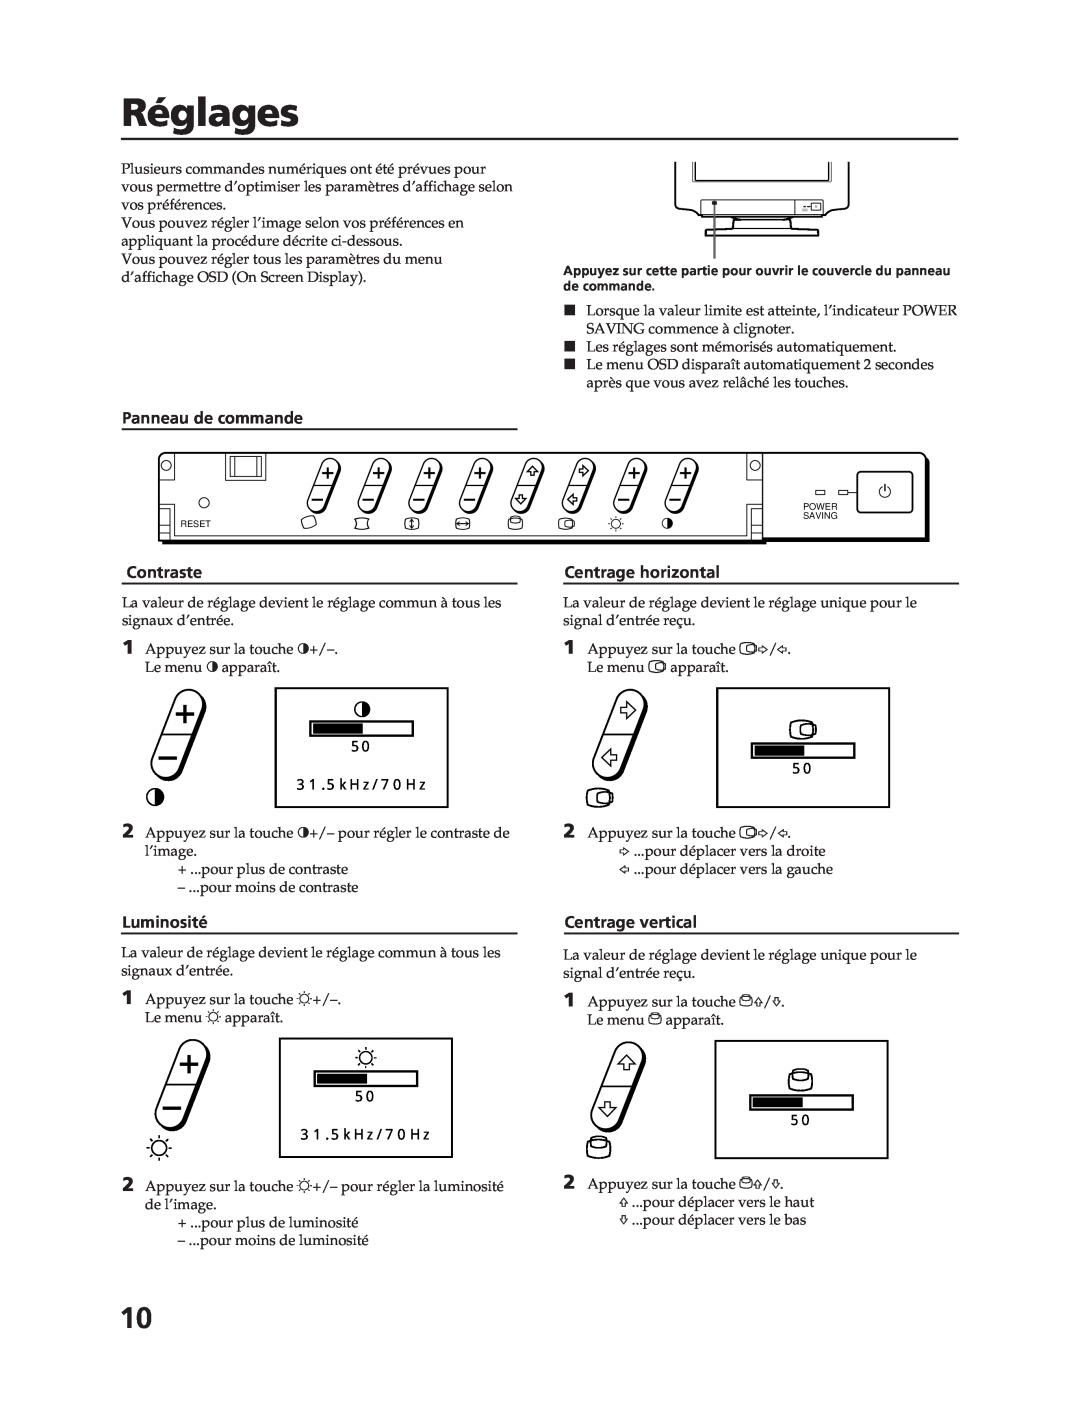 Sony CPD-17F03 manual Réglages, Panneau de commande, Contraste, Luminosité, Centrage horizontal, Centrage vertical 